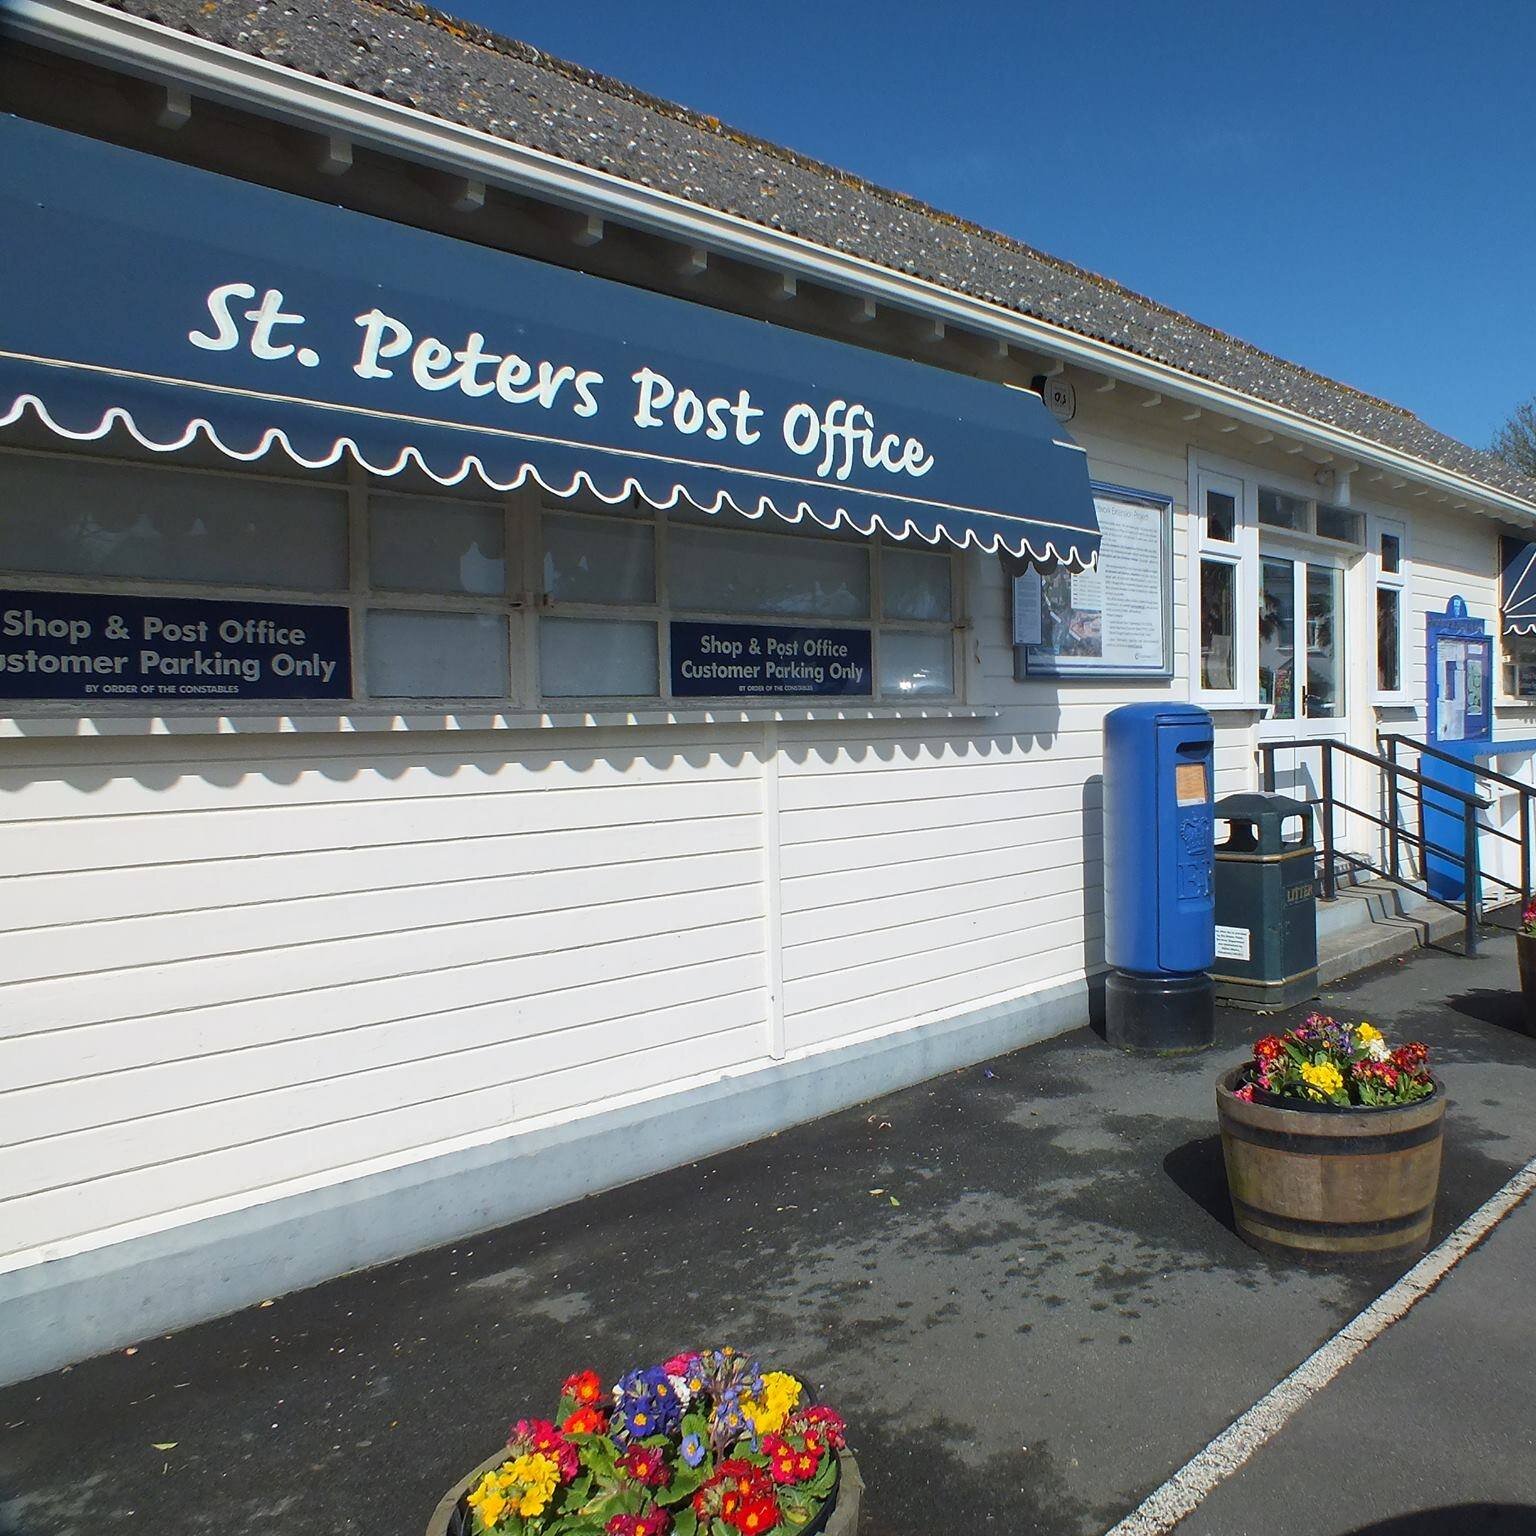 St. peters post office.jpg